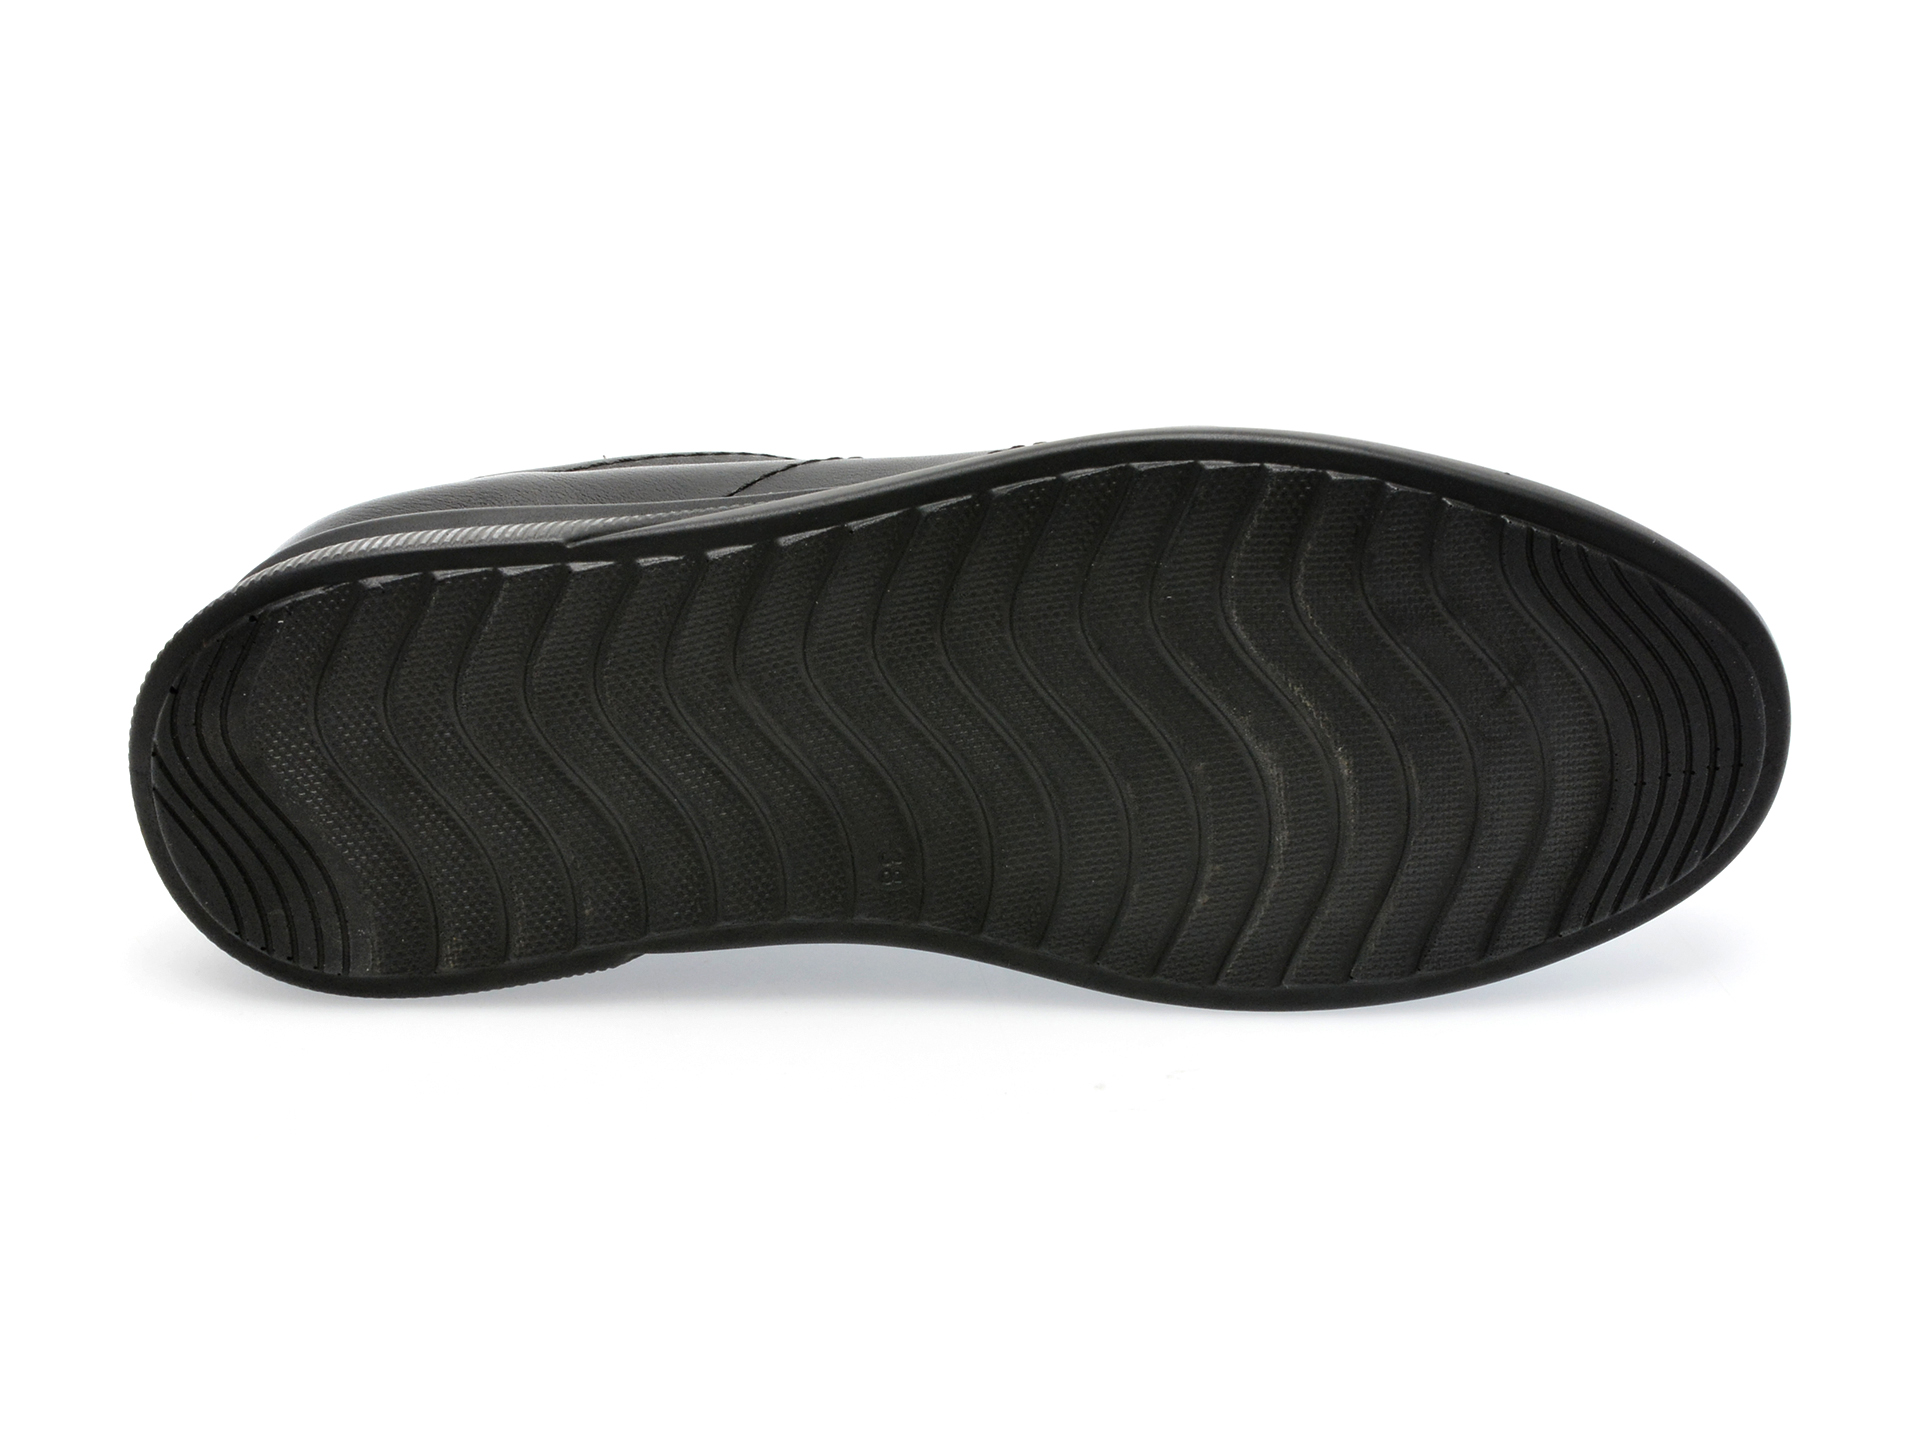 Poze Pantofi GRYXX negri, 12029, din piele naturala otter.ro